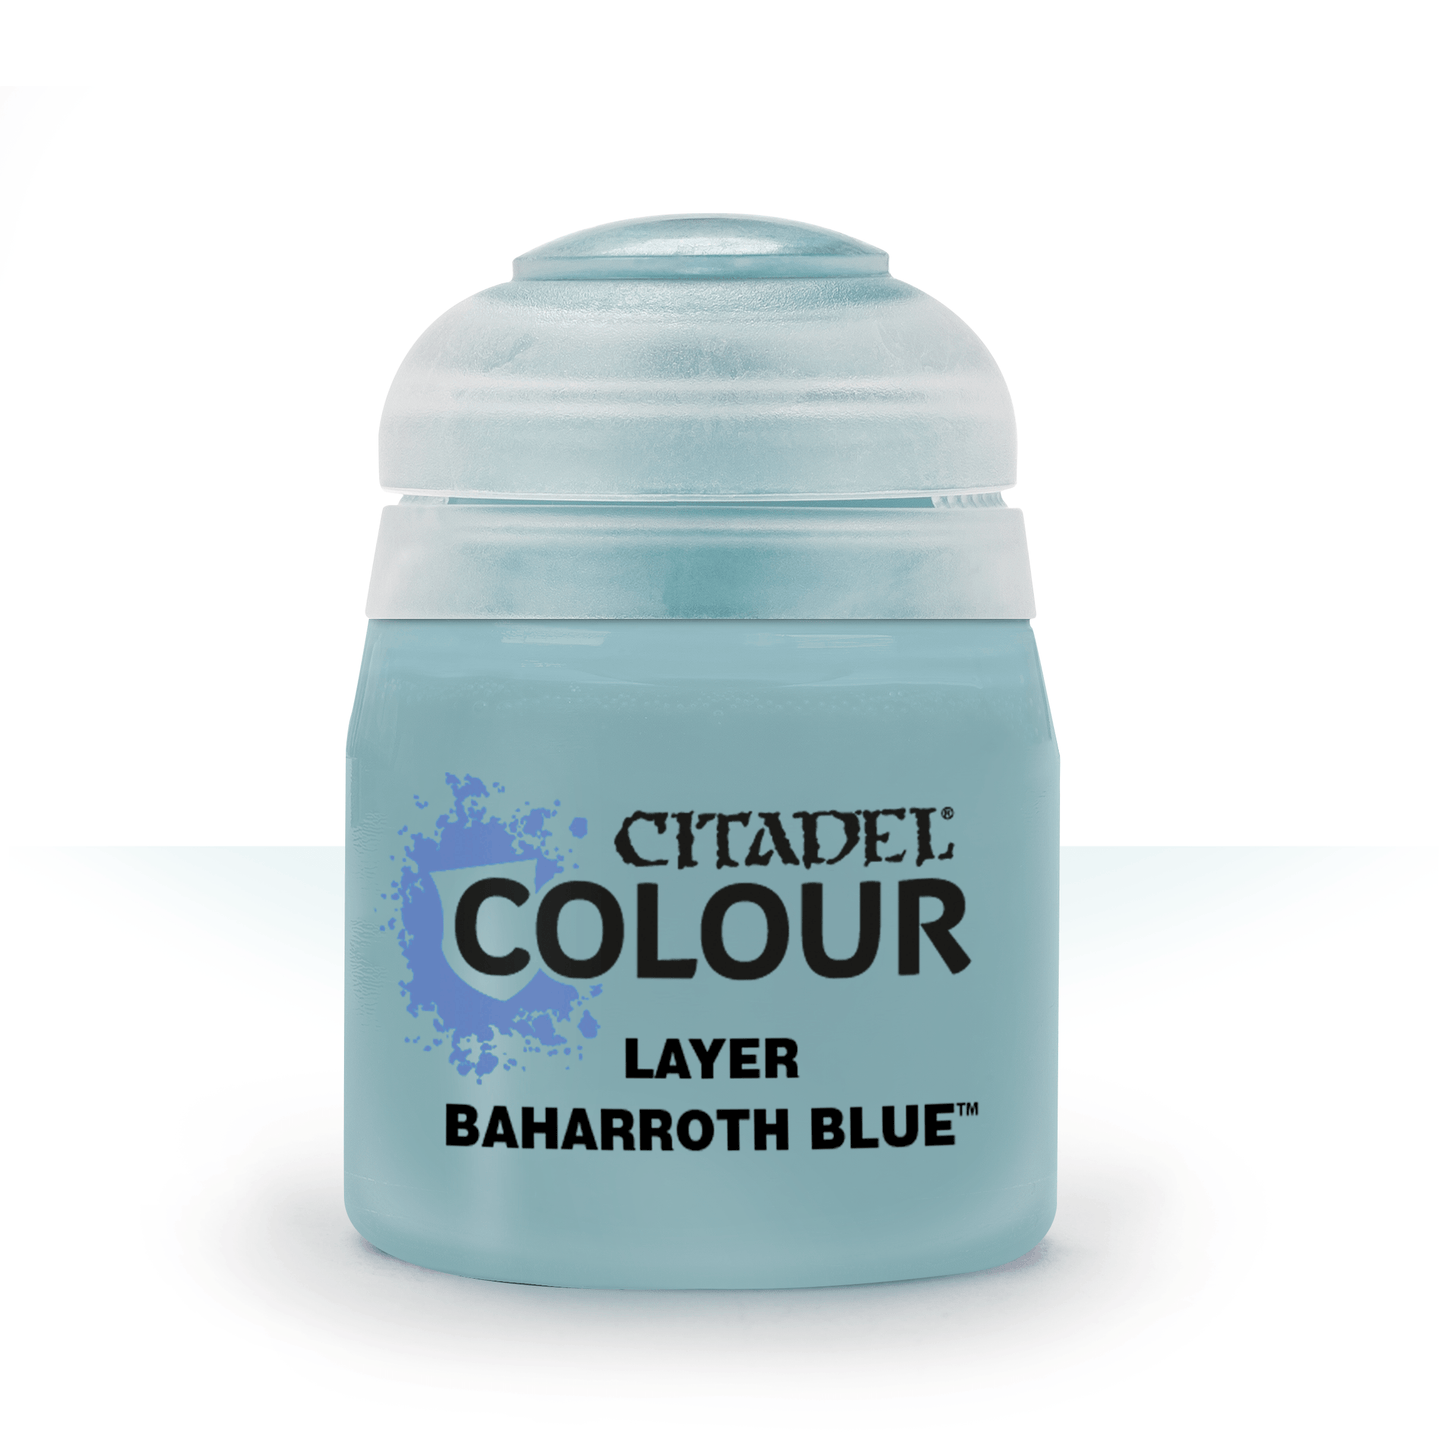 Citadel Colour - Baharroth Blue Layer Paint